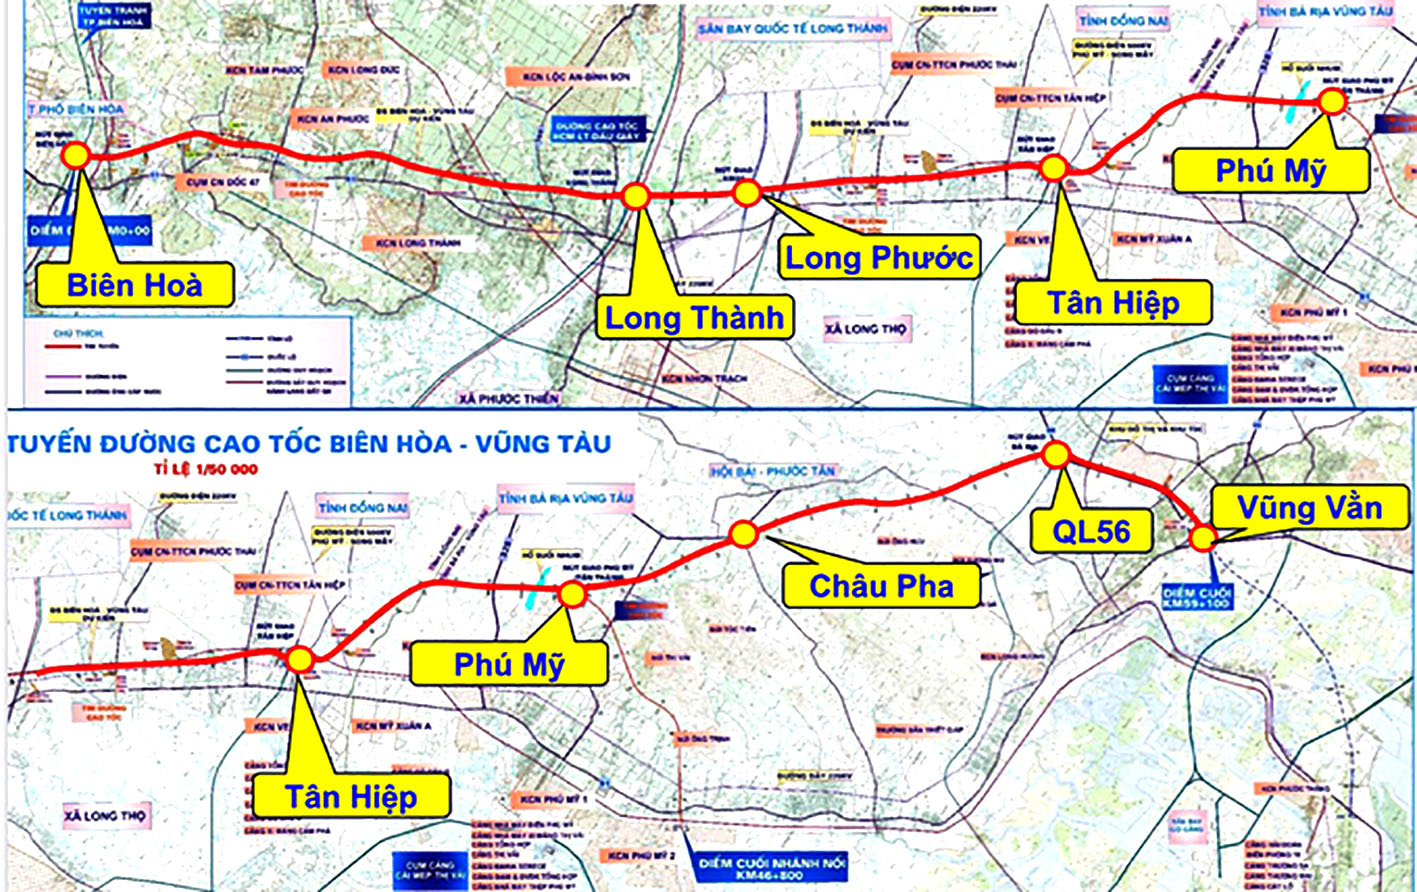 Sơ đồ hướng tuyến cao tốc Biên Hòa - Vũng Tàu - Ảnh: Báo Bà Rịa-Vũng Tàu điện tử